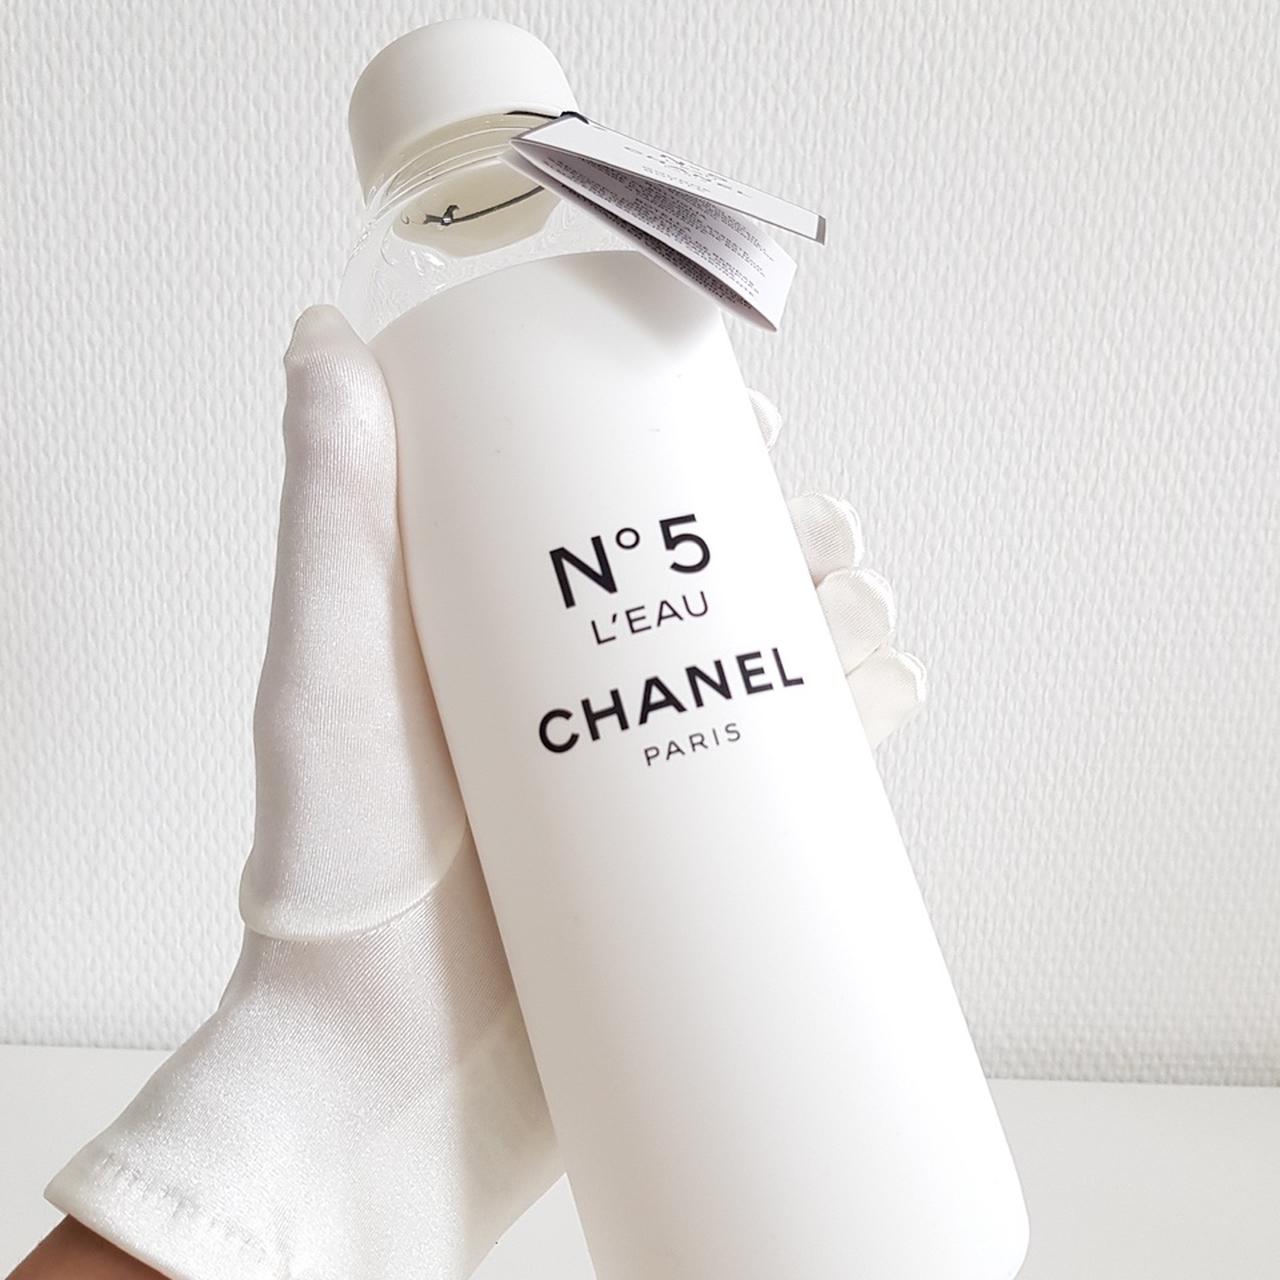 NWT CHANEL Paris Factory No. 5 L'eau Water Bottle White Black Limited  Edition